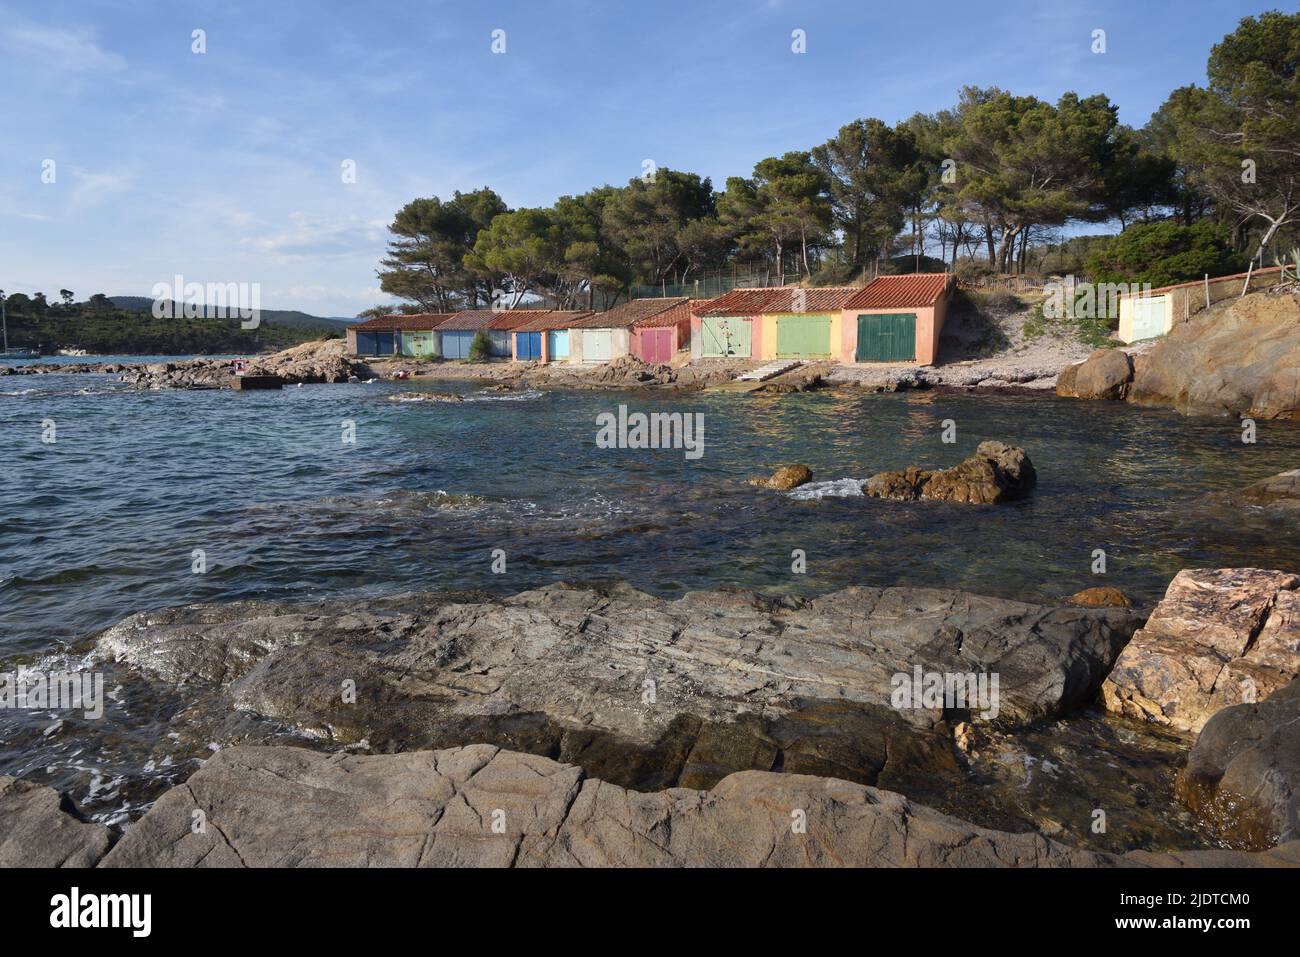 Vieux hangars colorés sur la rive près de la plage ou de la plage de Bregançon en face du fort et de l'île de Bregançon Bormes-les-Mimosas Var Provence france Banque D'Images